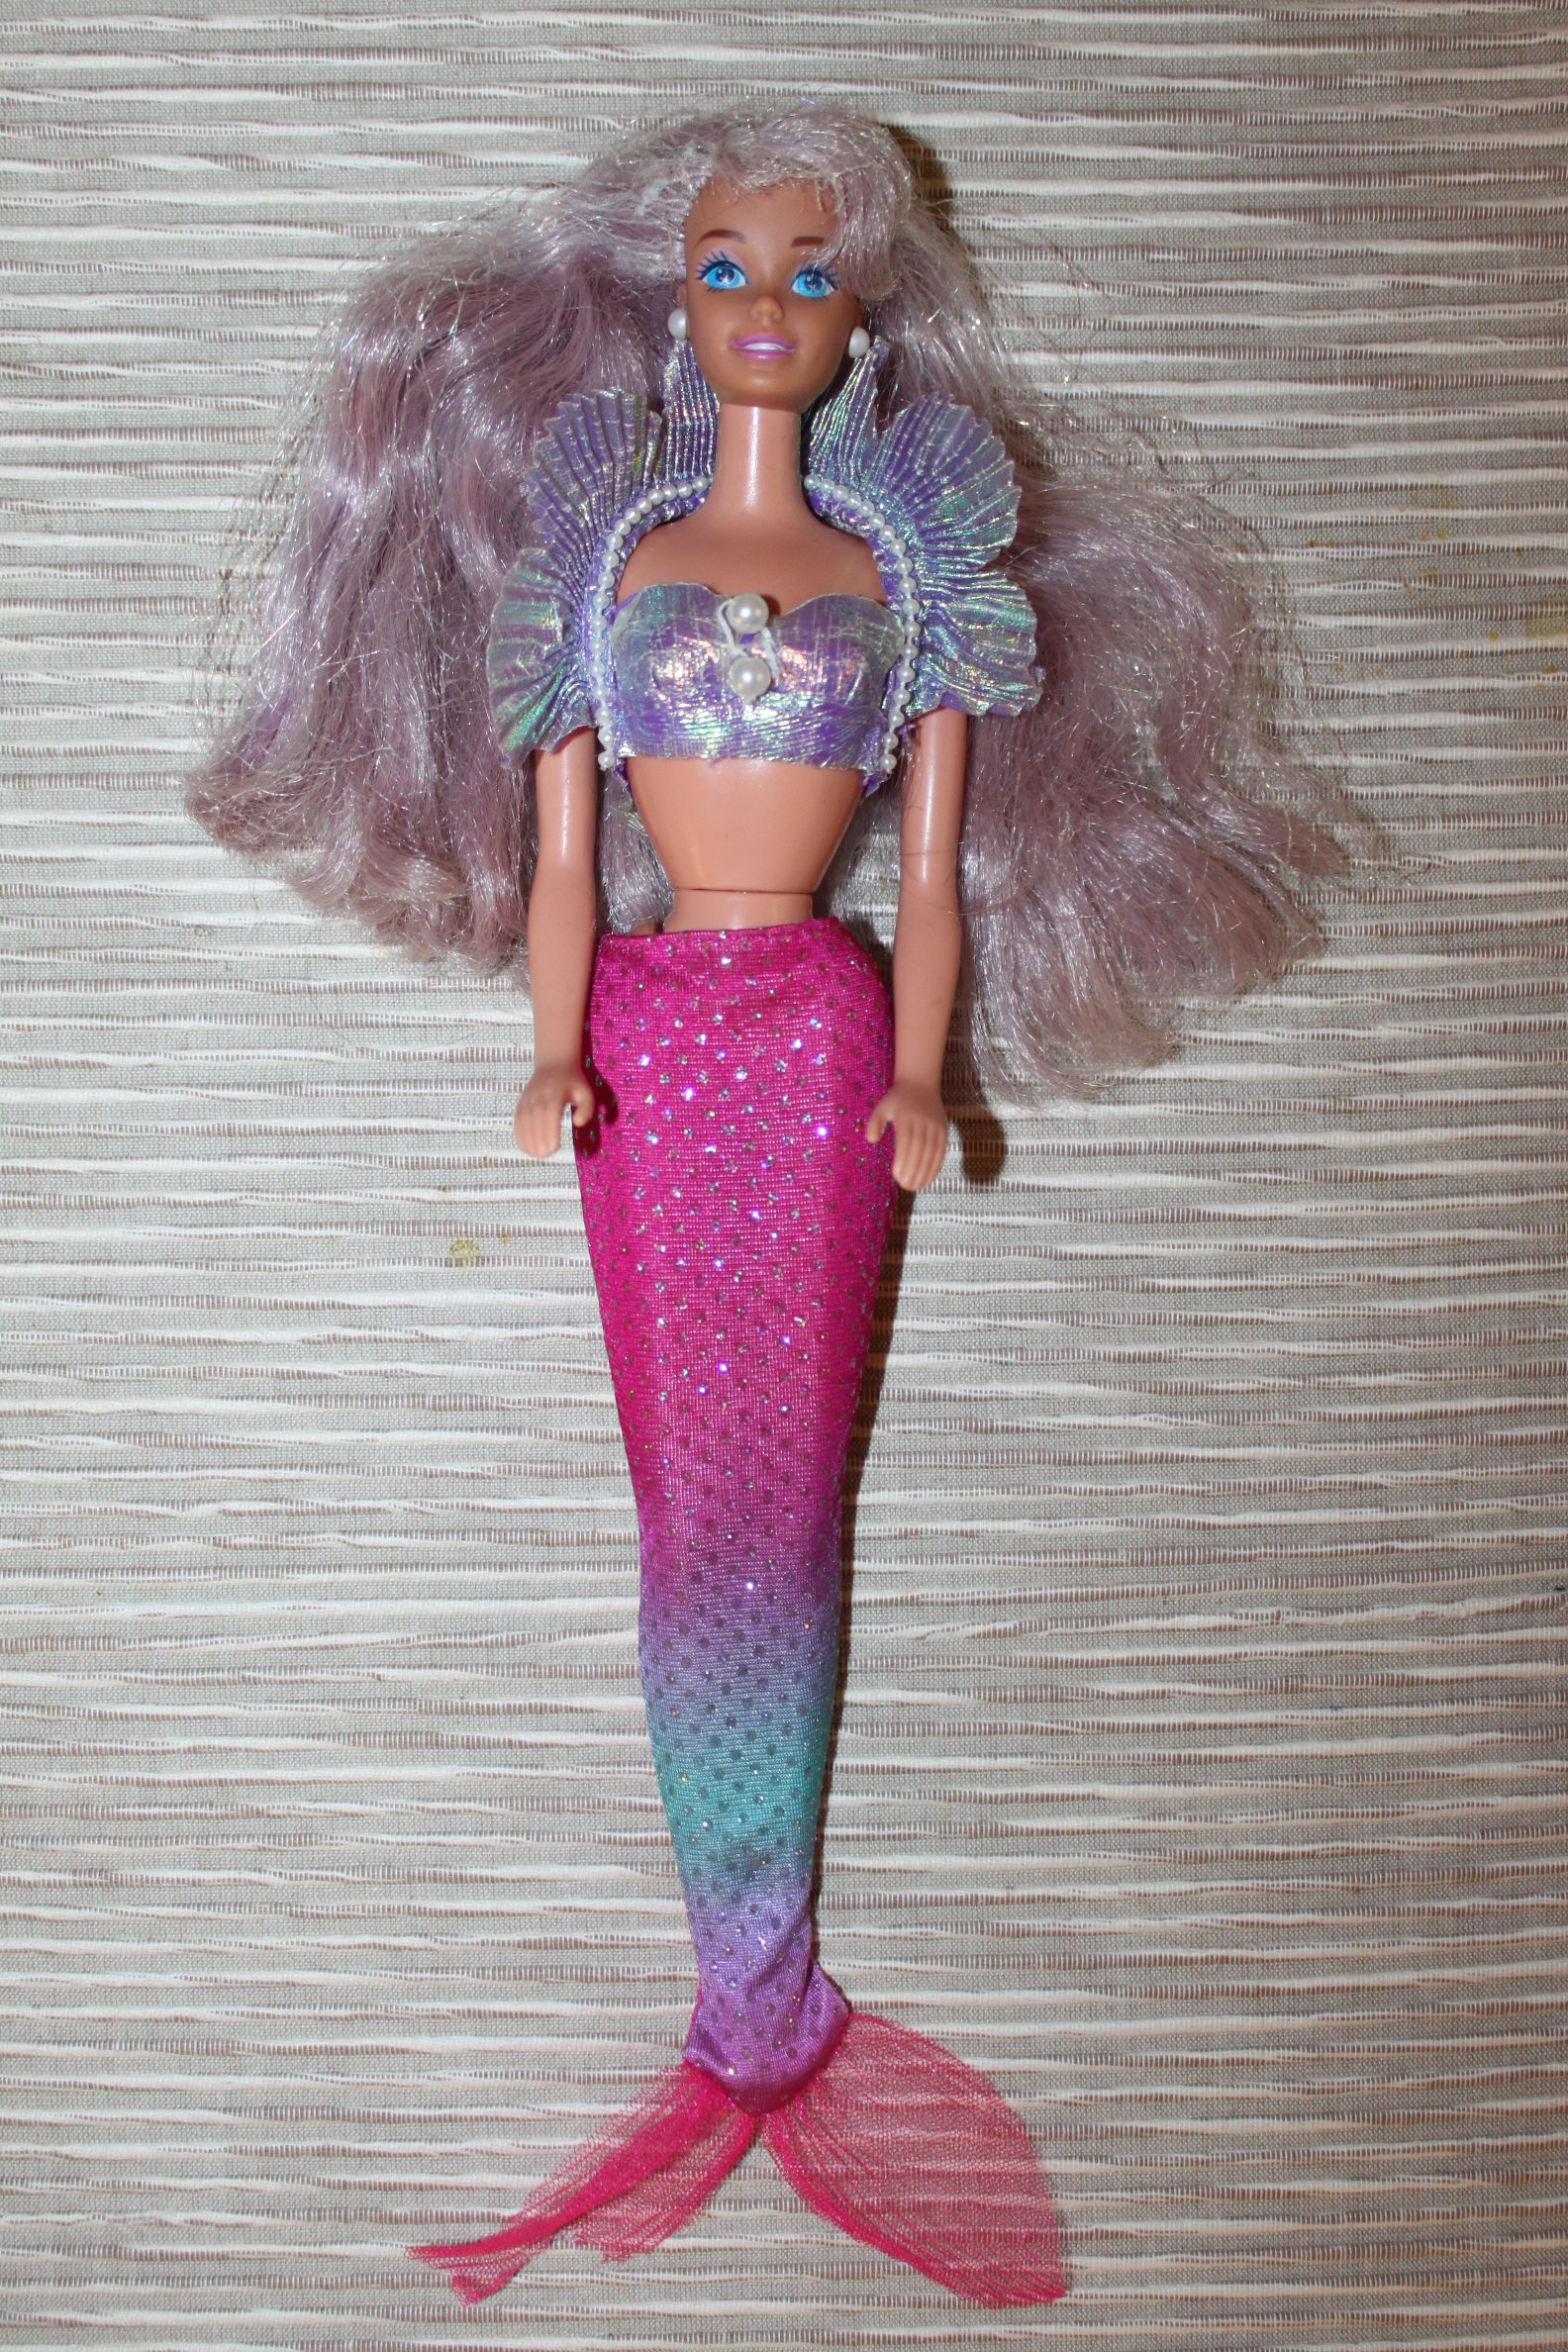 magical hair mermaid barbie